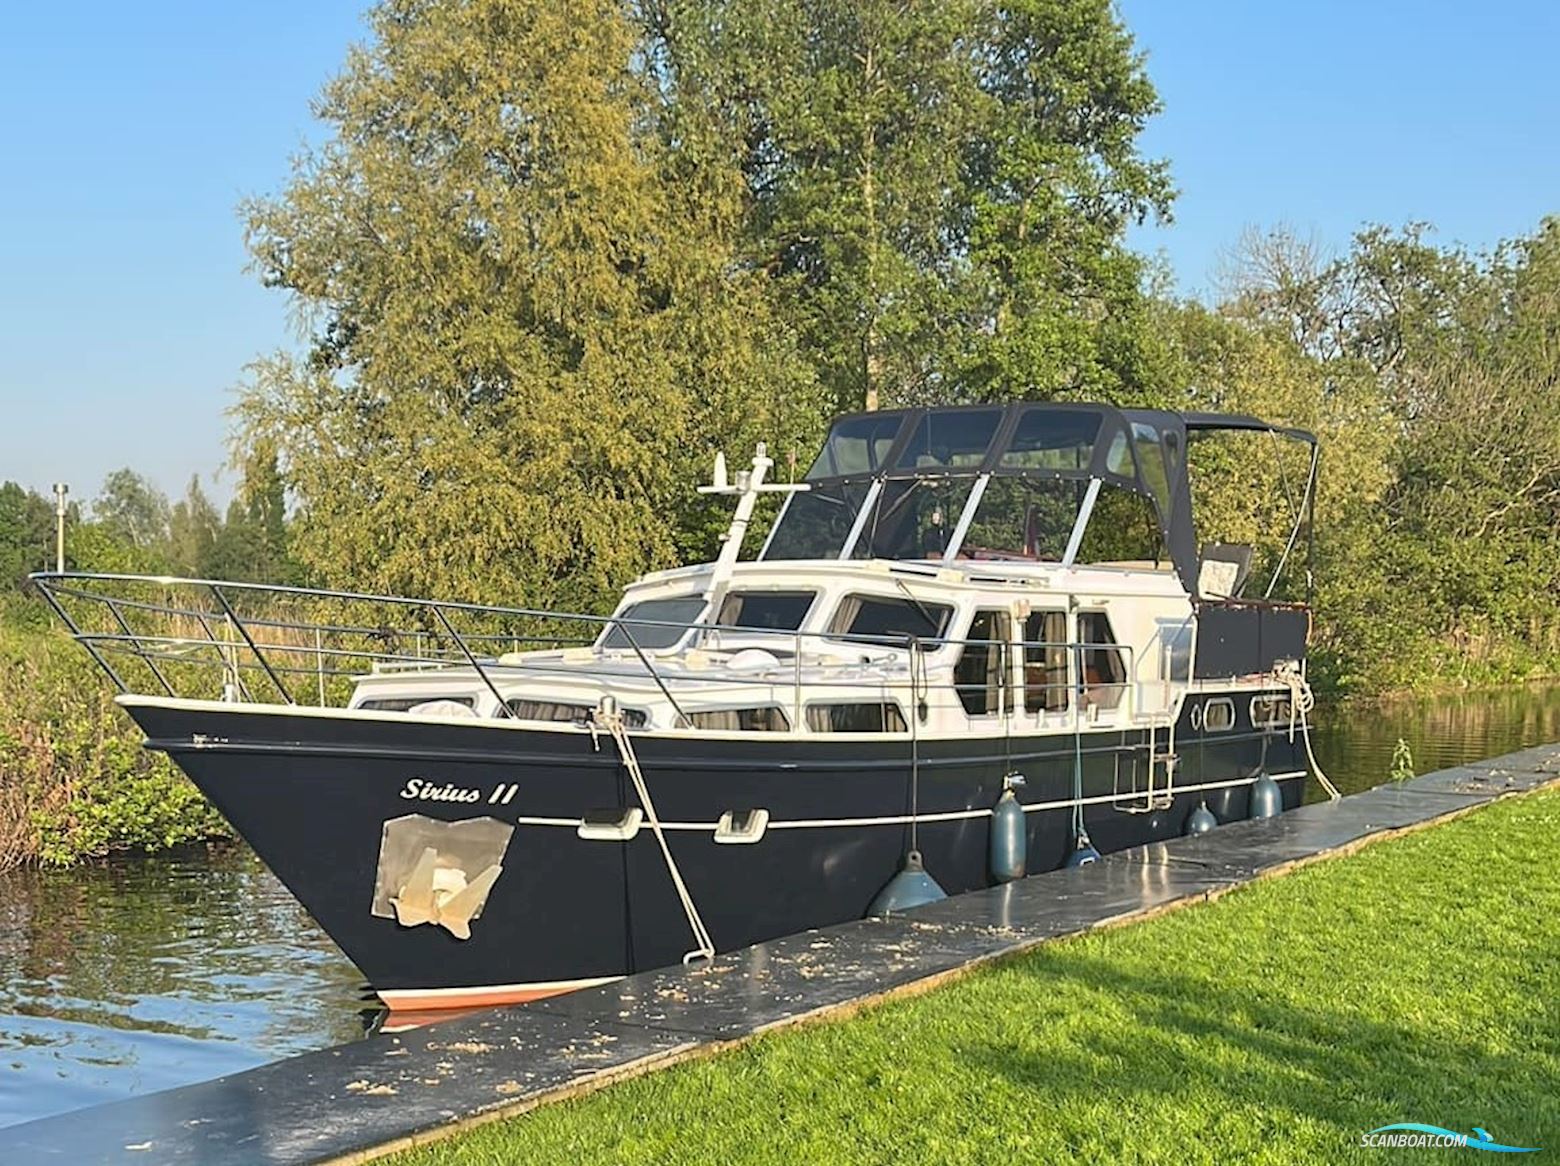 Valkkruiser 1200 AK Motor boat 1984, with Daf 575 engine, The Netherlands